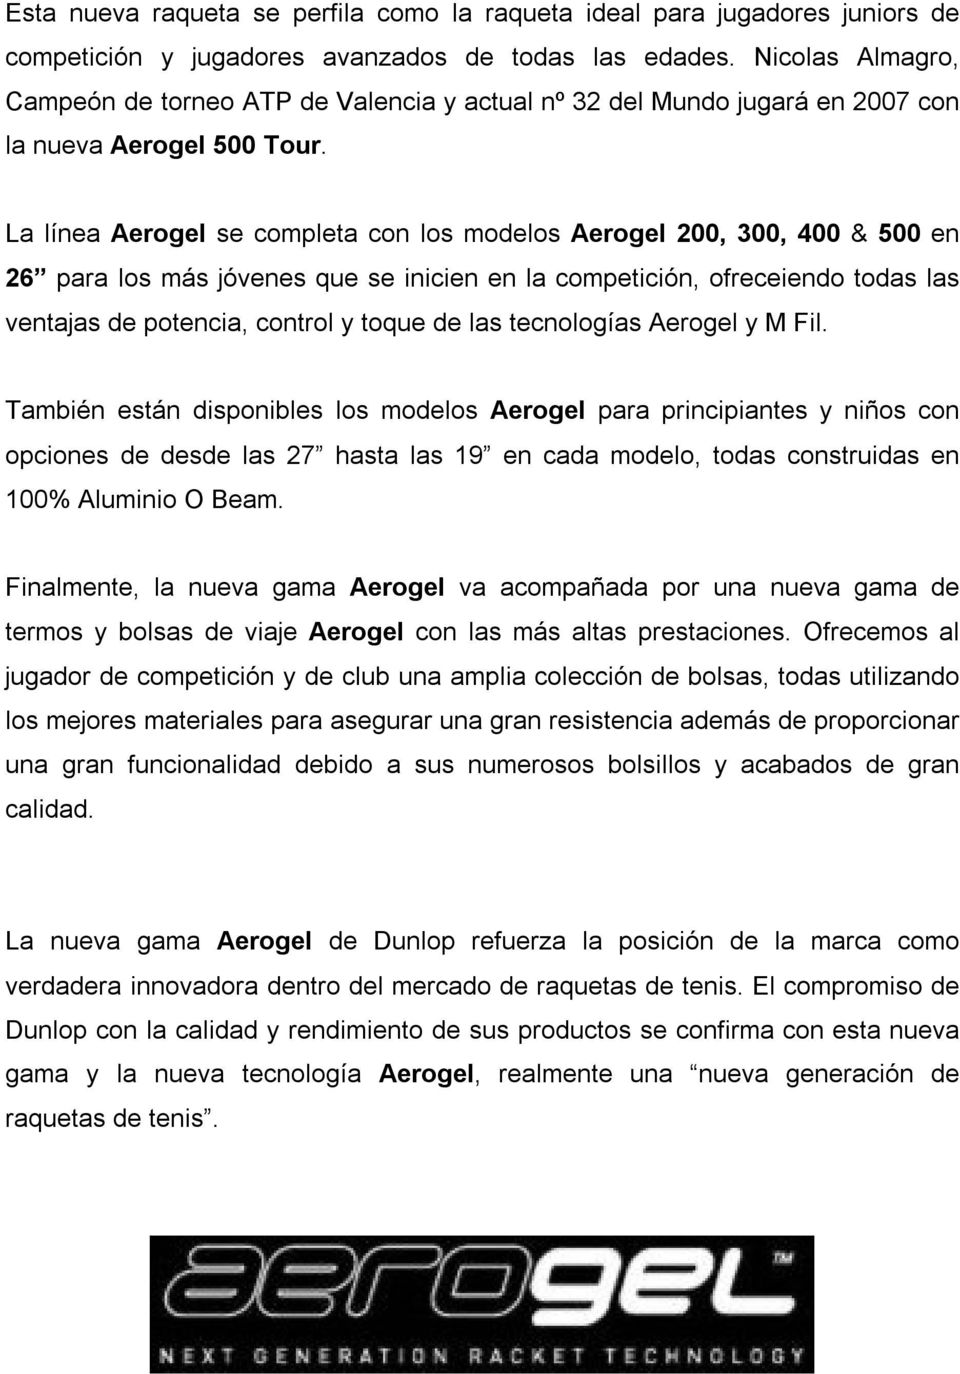 La línea Aerogel se completa con los modelos Aerogel 200, 300, 400 & 500 en 26 para los más jóvenes que se inicien en la competición, ofreceiendo todas las ventajas de potencia, control y toque de